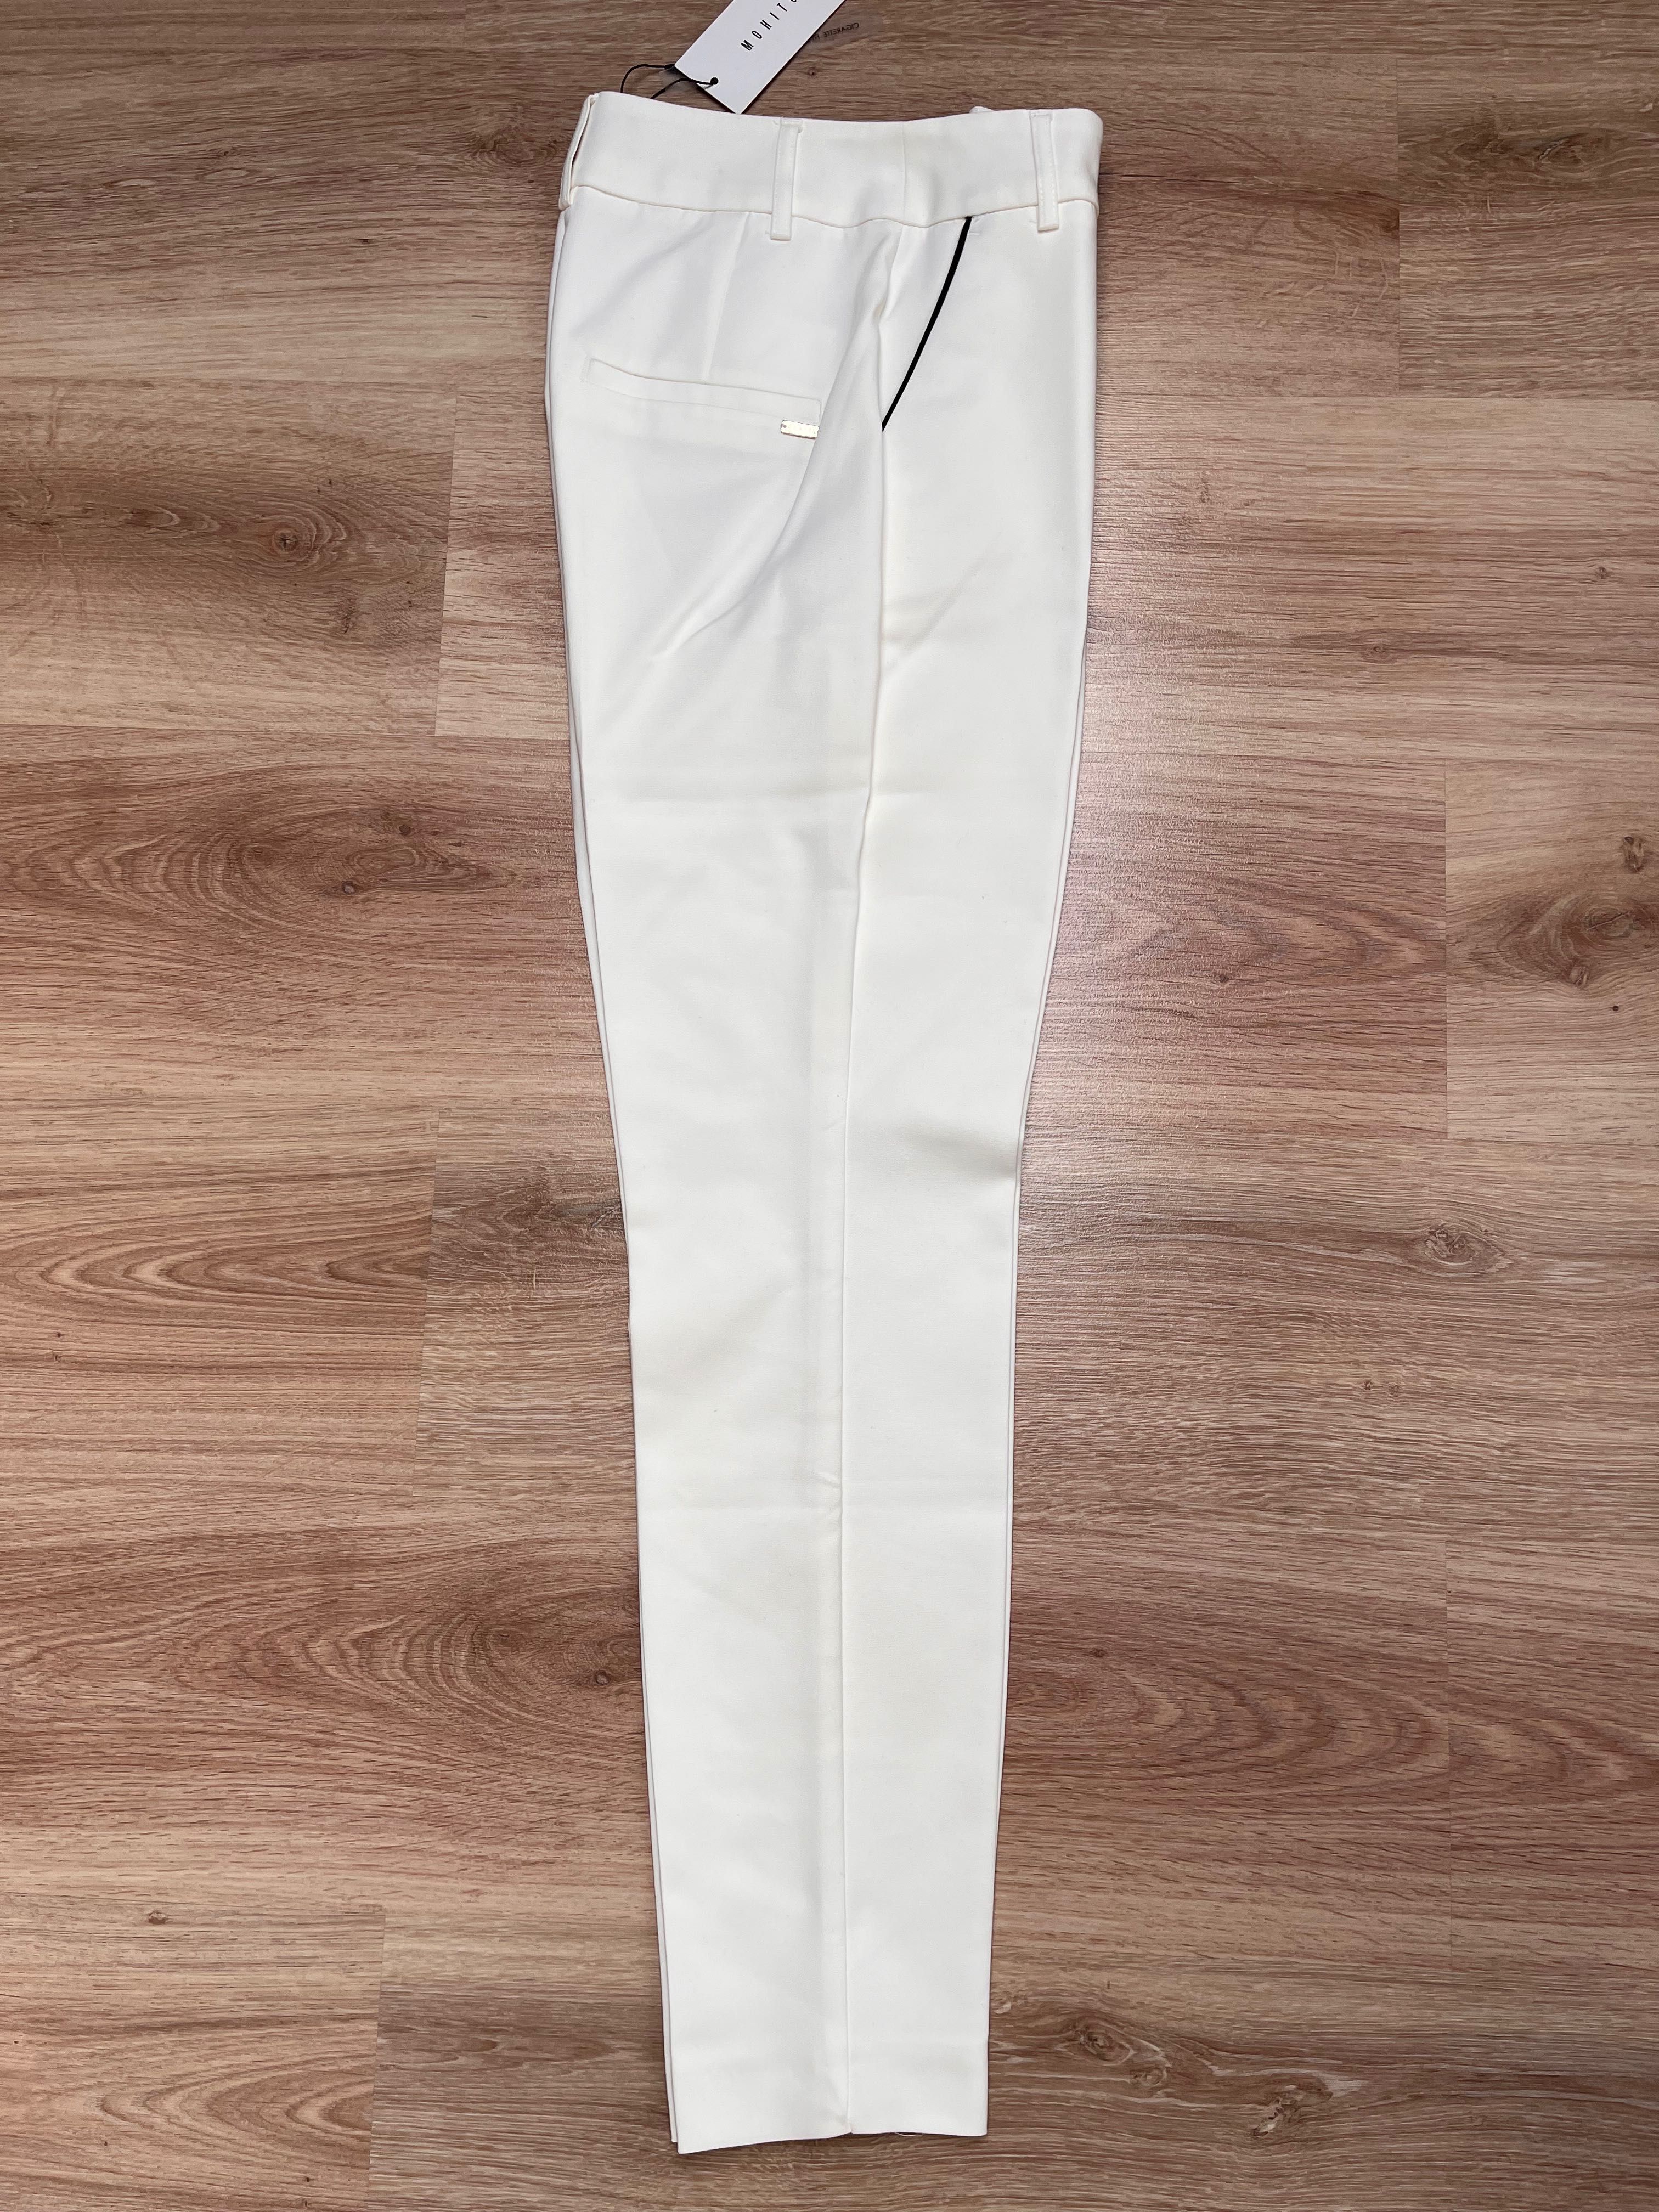 Spodnie damskie eleganckie białe Mohito r. 34 Nowe